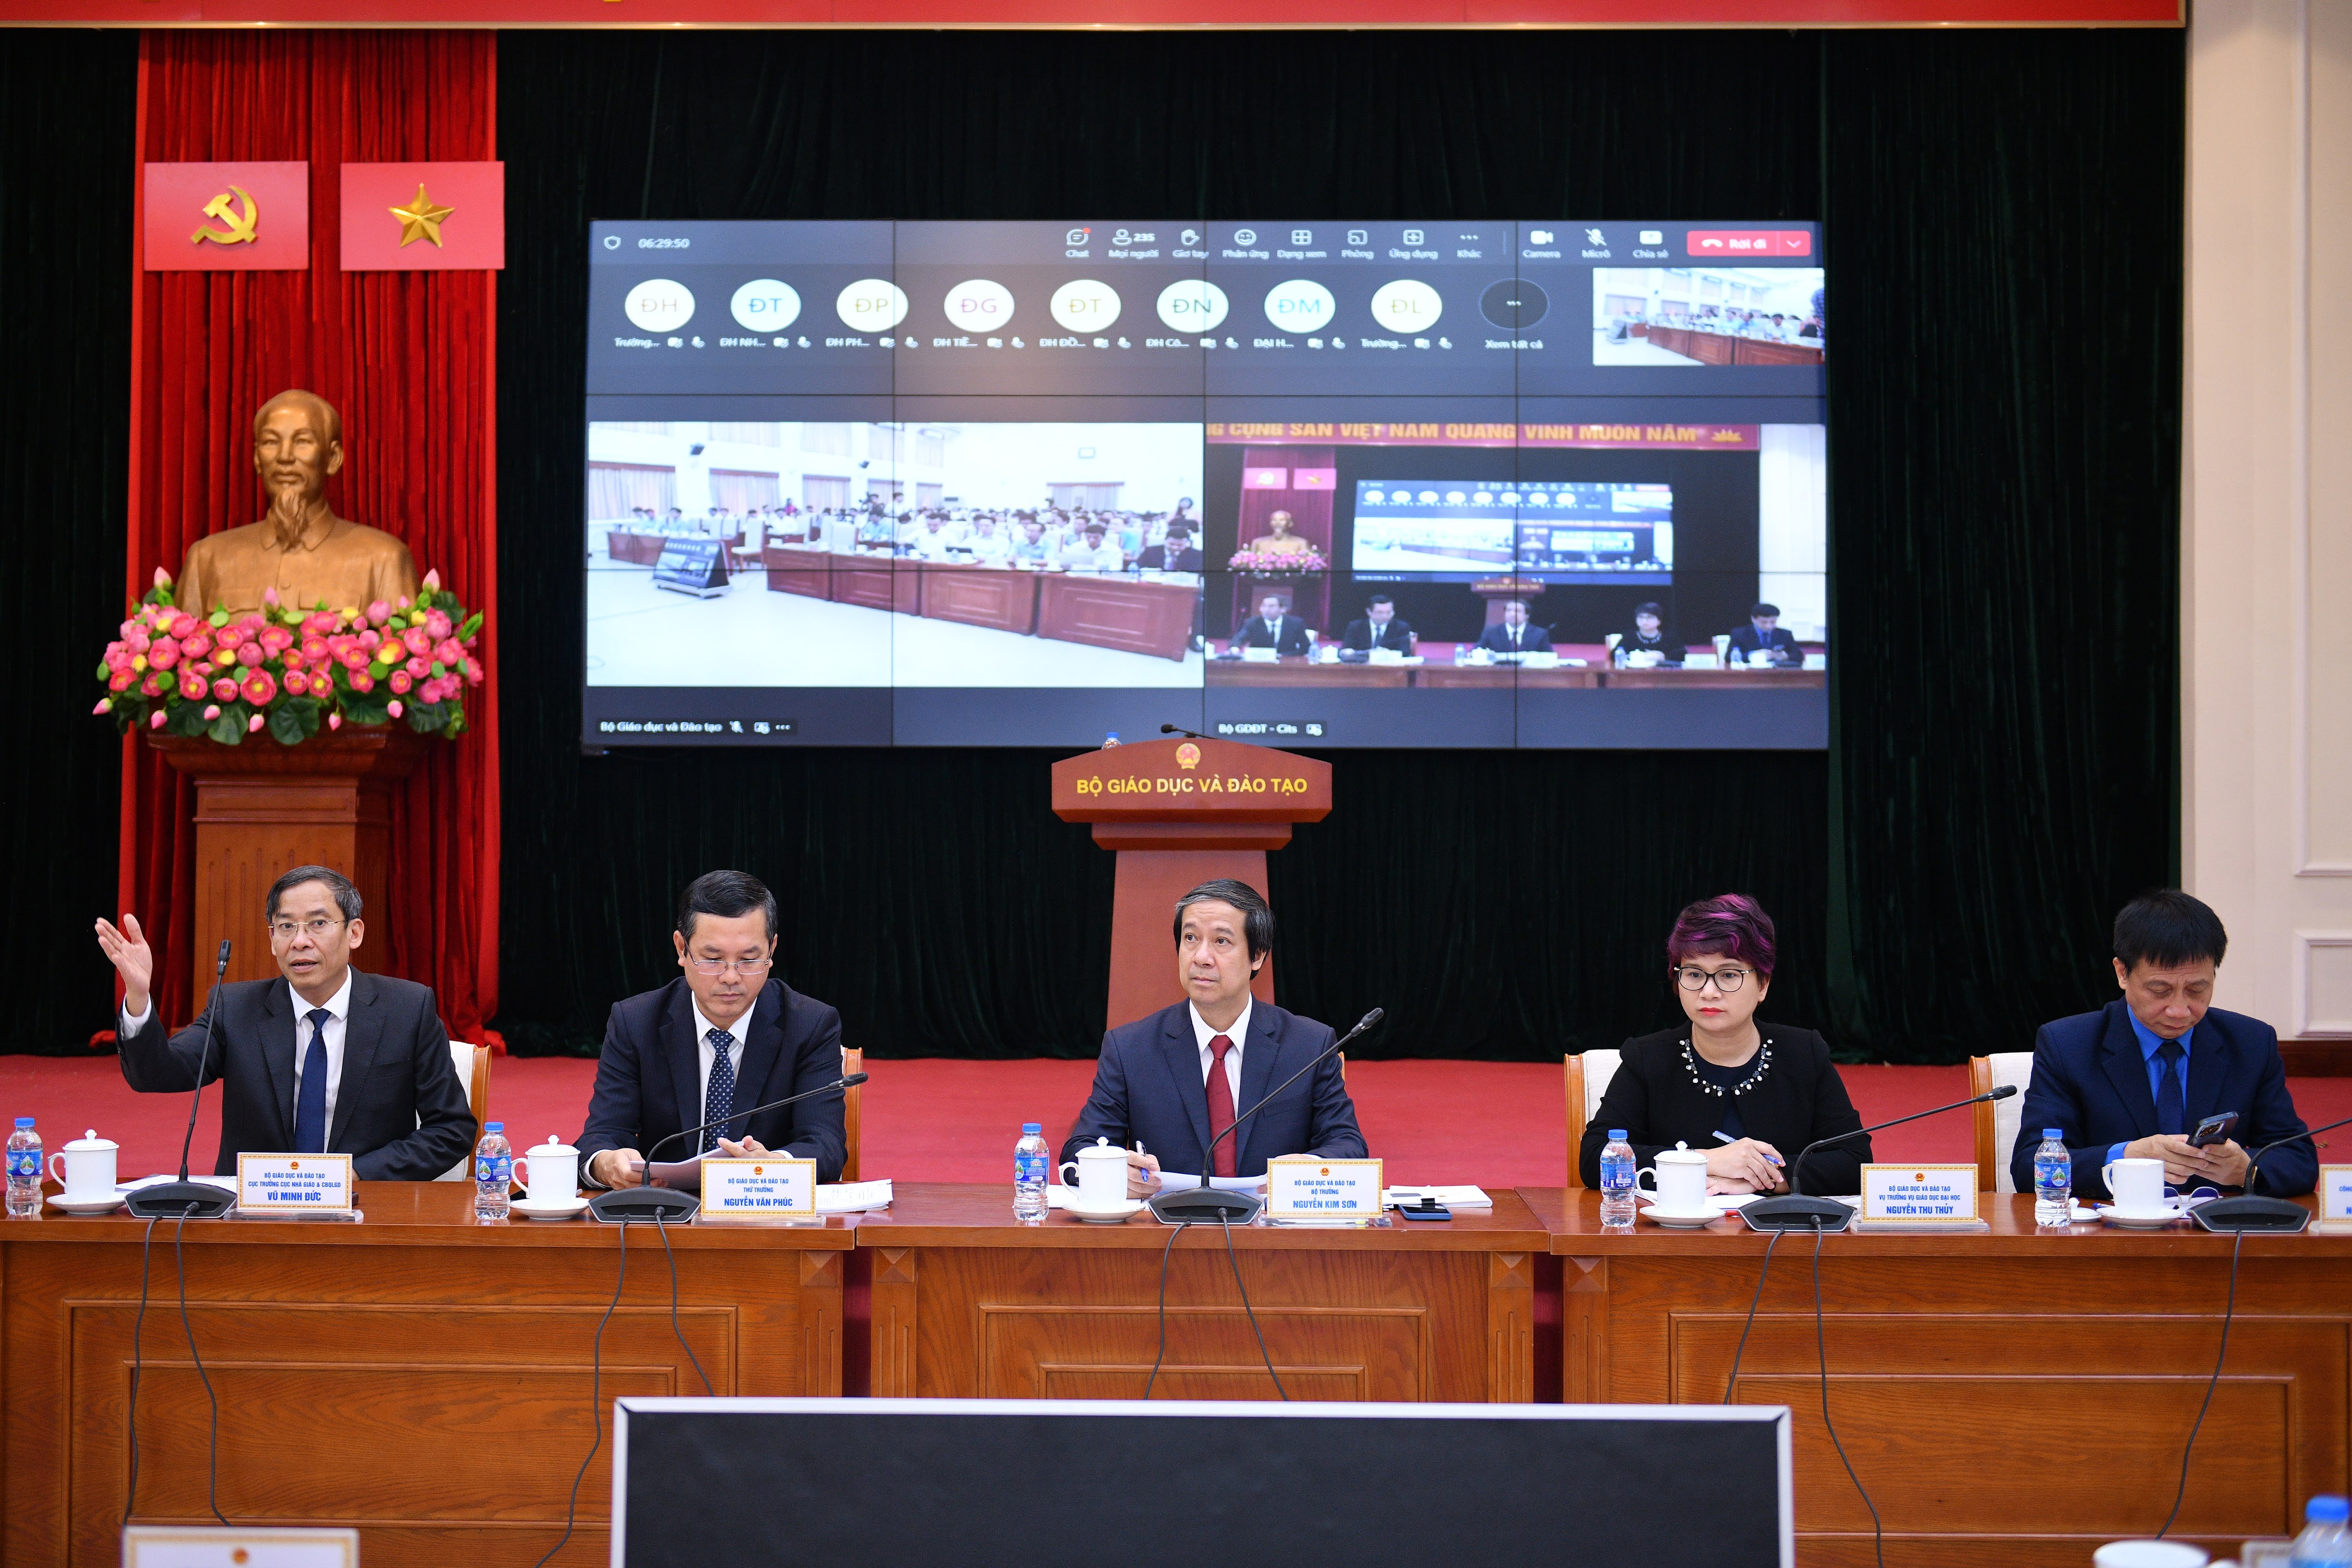 Bộ trưởng Nguyễn Kim Sơn nhấn mạnh '4 chữ kiên' để phát triển bền vững giáo dục  ảnh 2